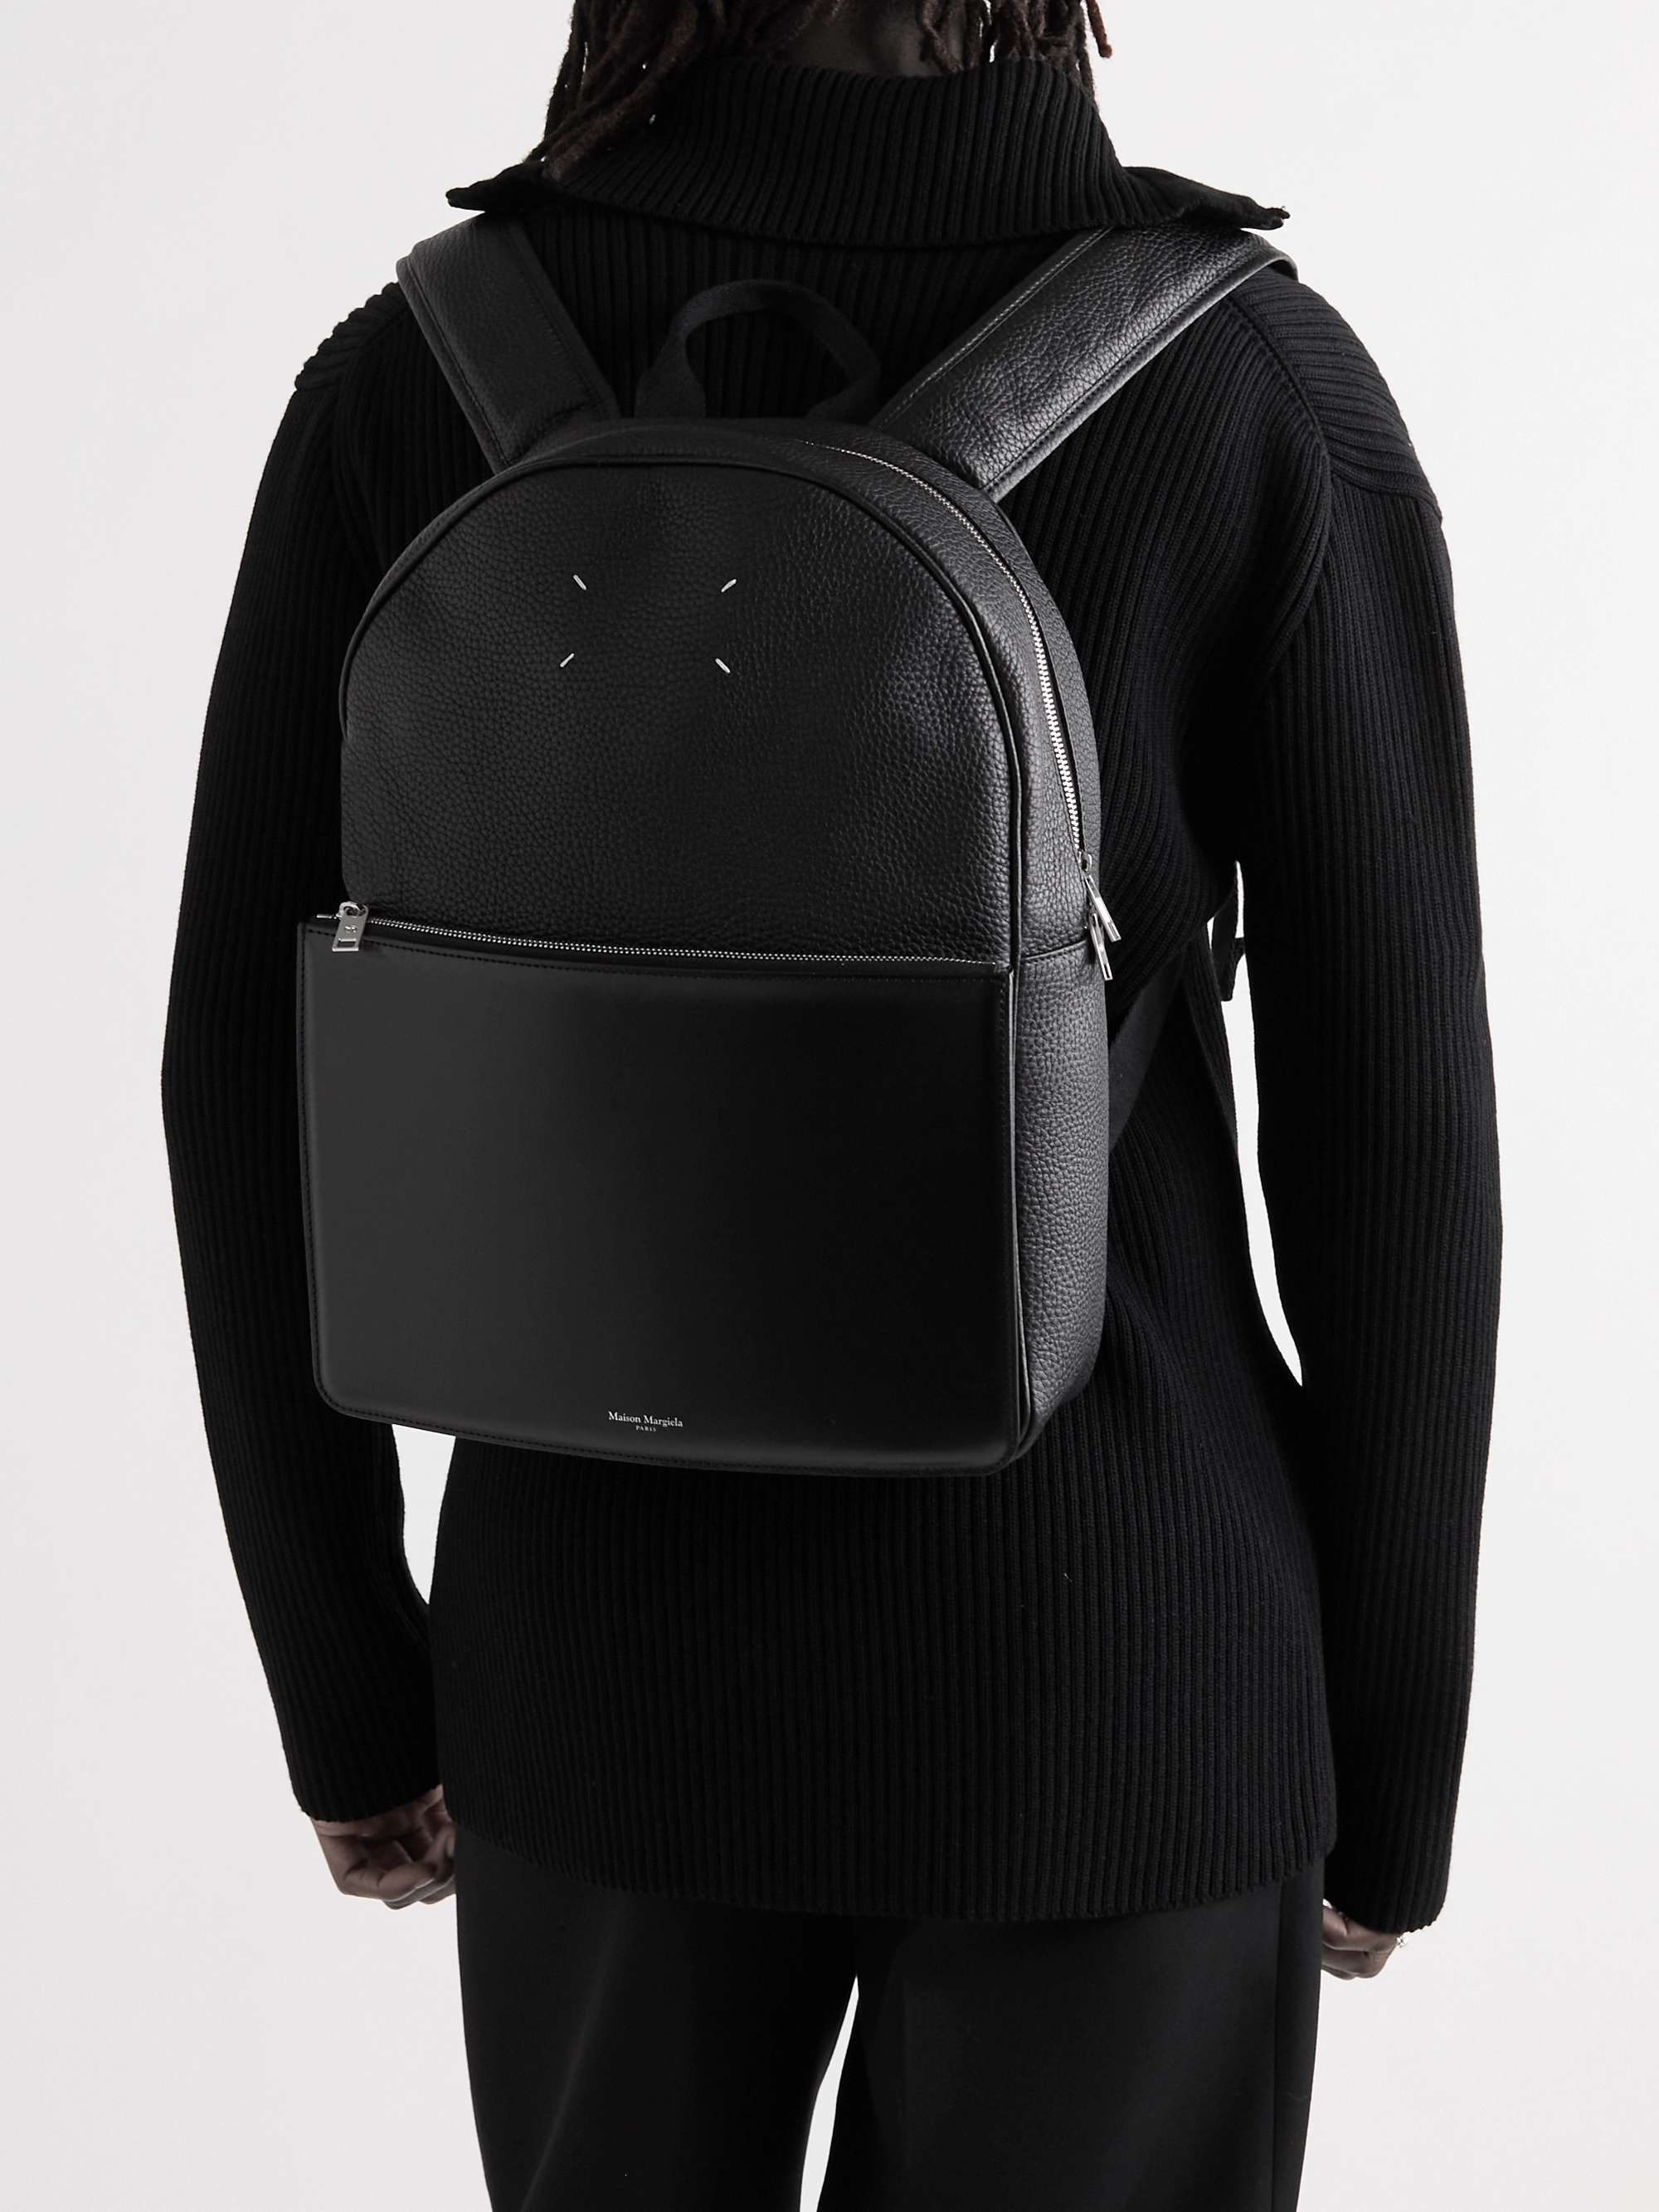 MAISON MARGIELA Full-Grain and Smooth Leather Backpack for Men | MR PORTER